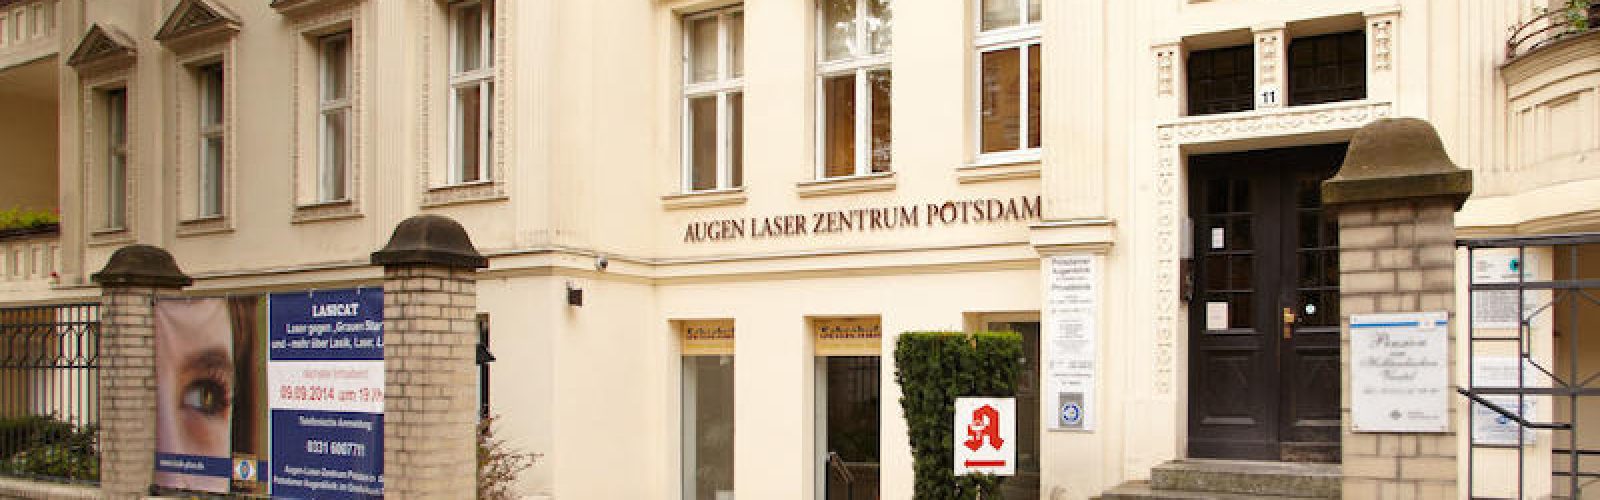 Blick auf die Augenklinik im Graefe-Haus in Potsdam.